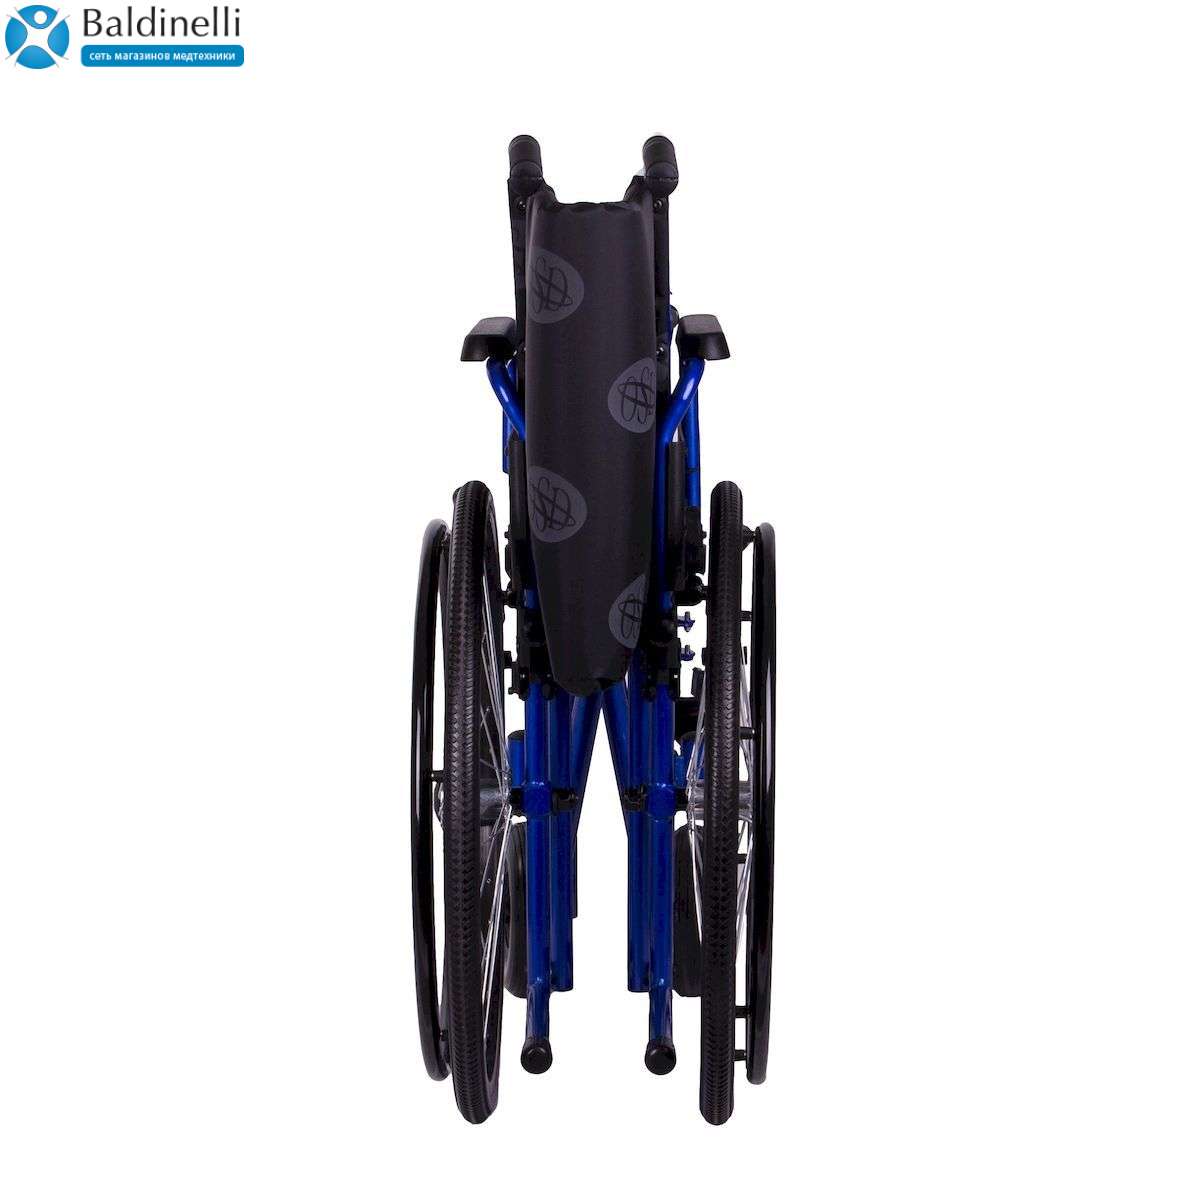 Усиленная инвалидная коляска OSD Millenium Heavy Duty 60 см